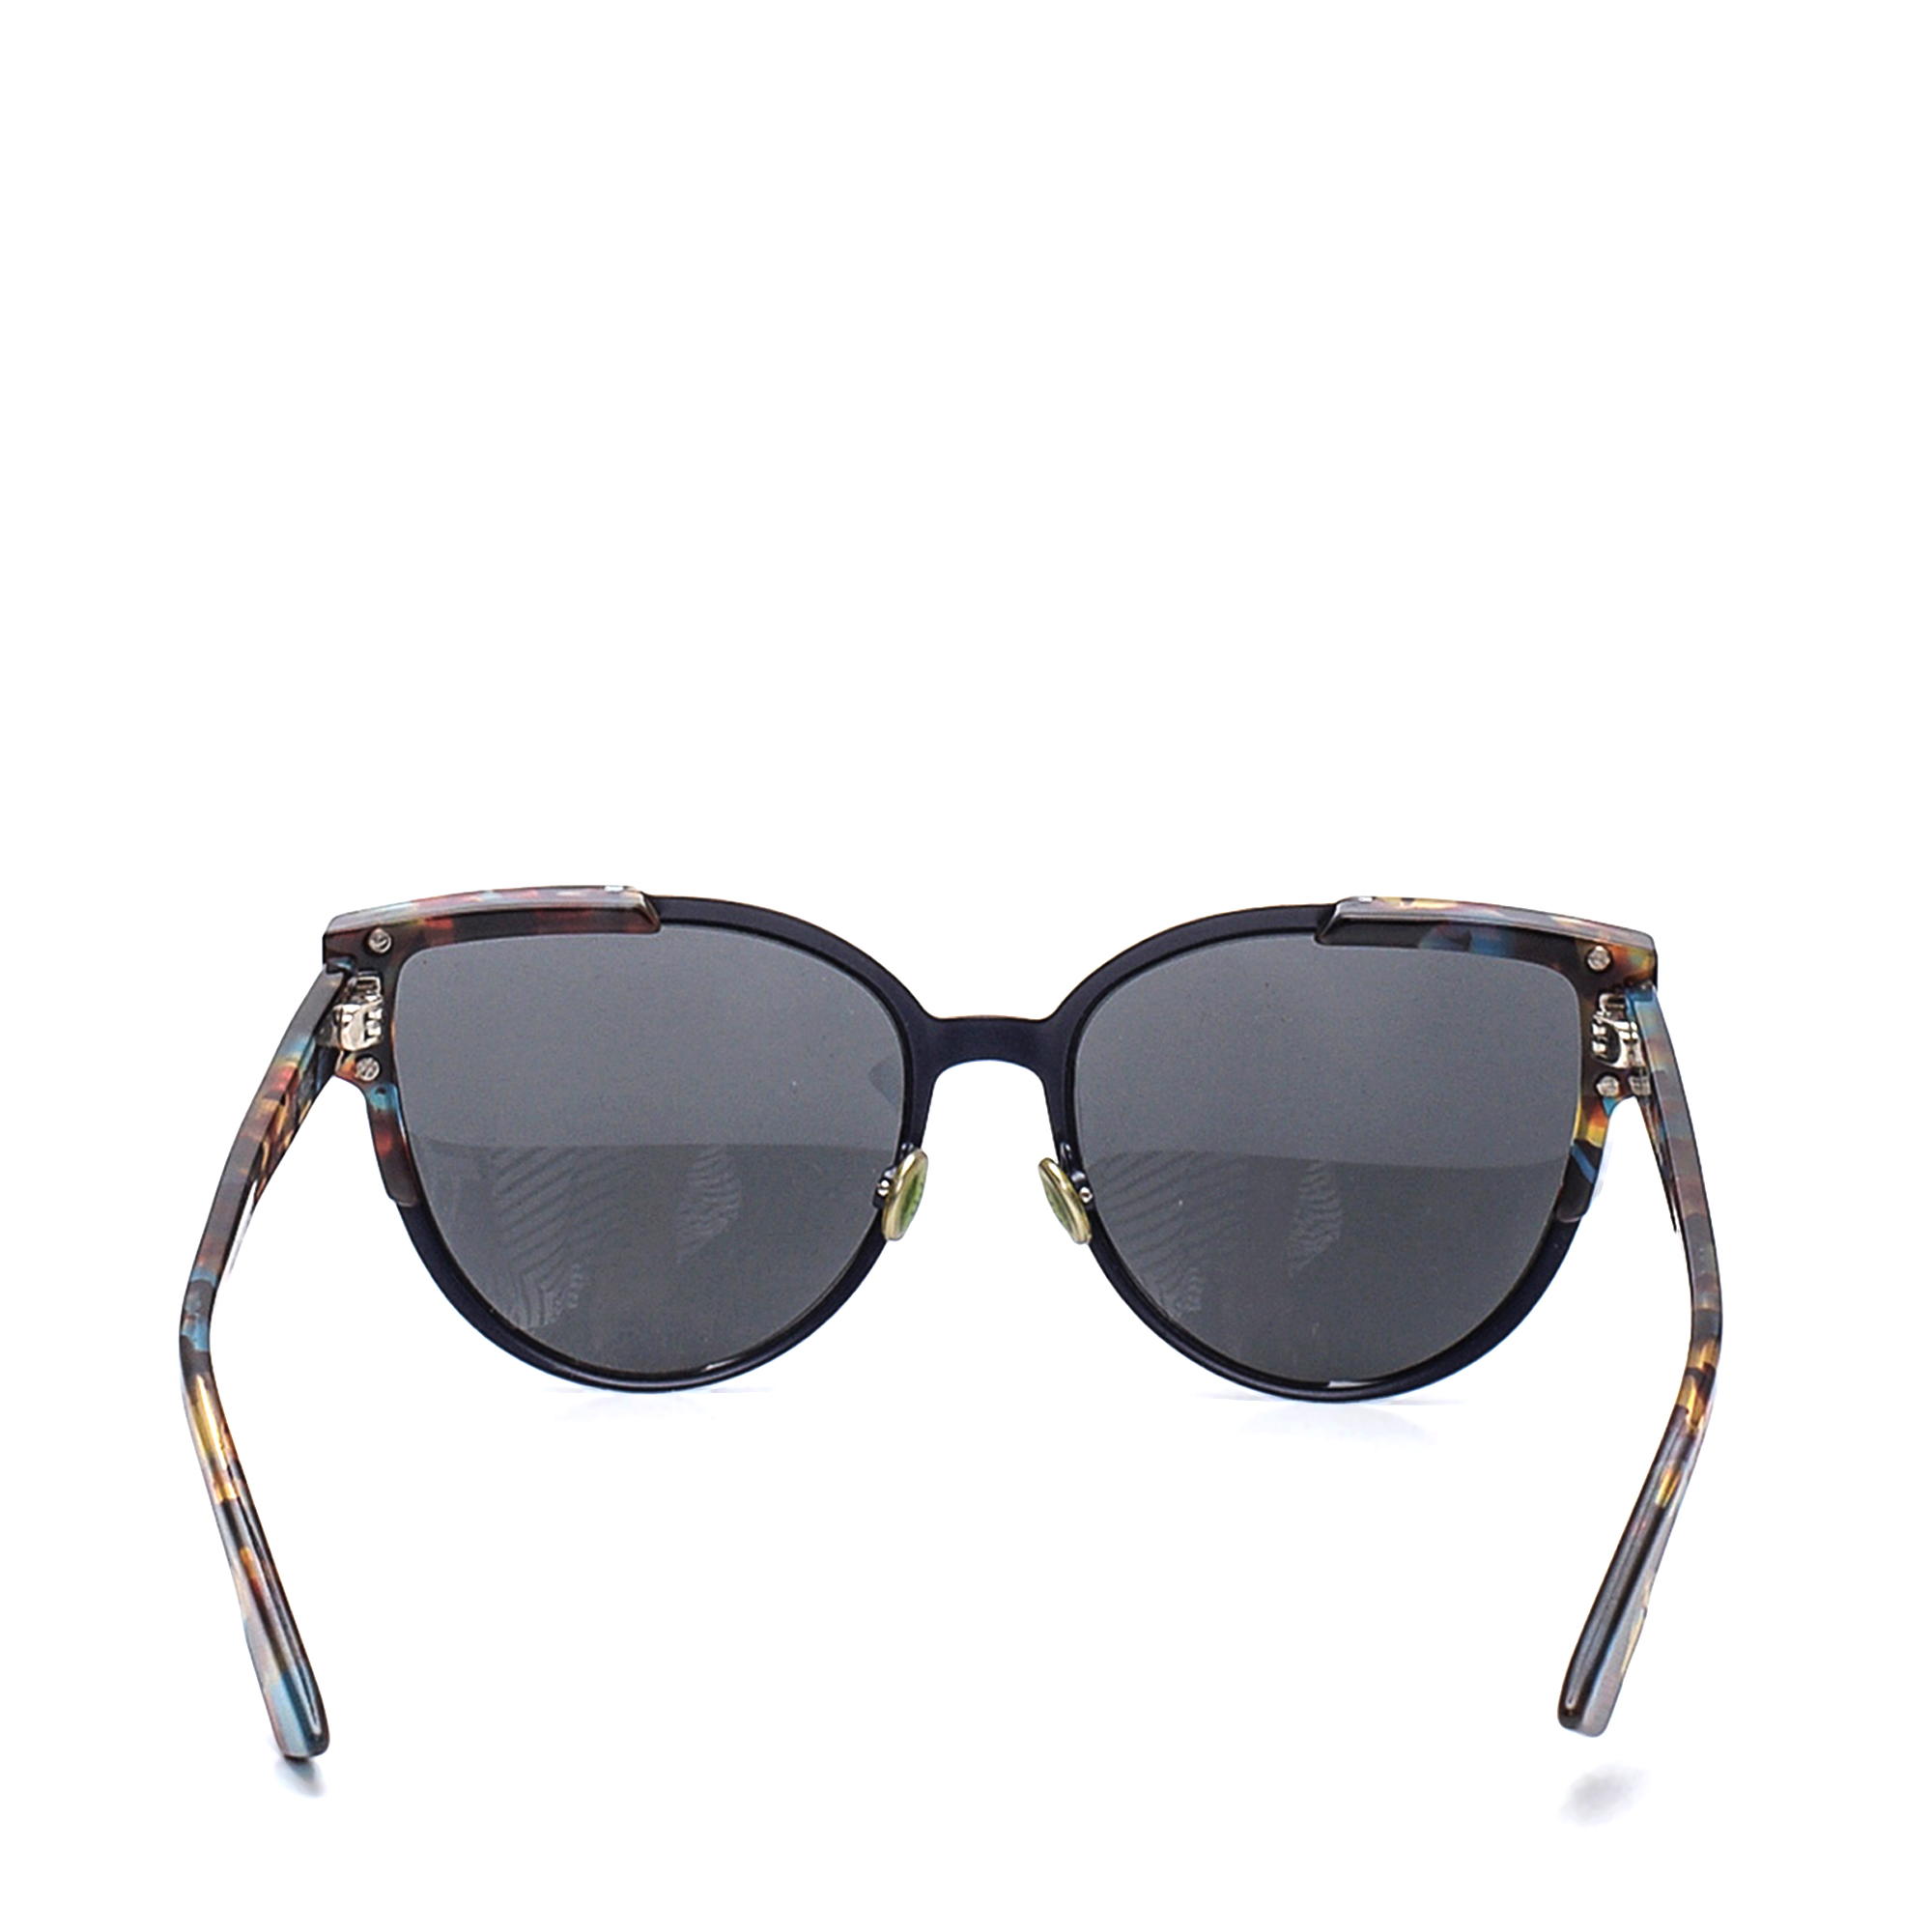 Christian Dior - Black & Blue Tortoiseshell Sunglasses